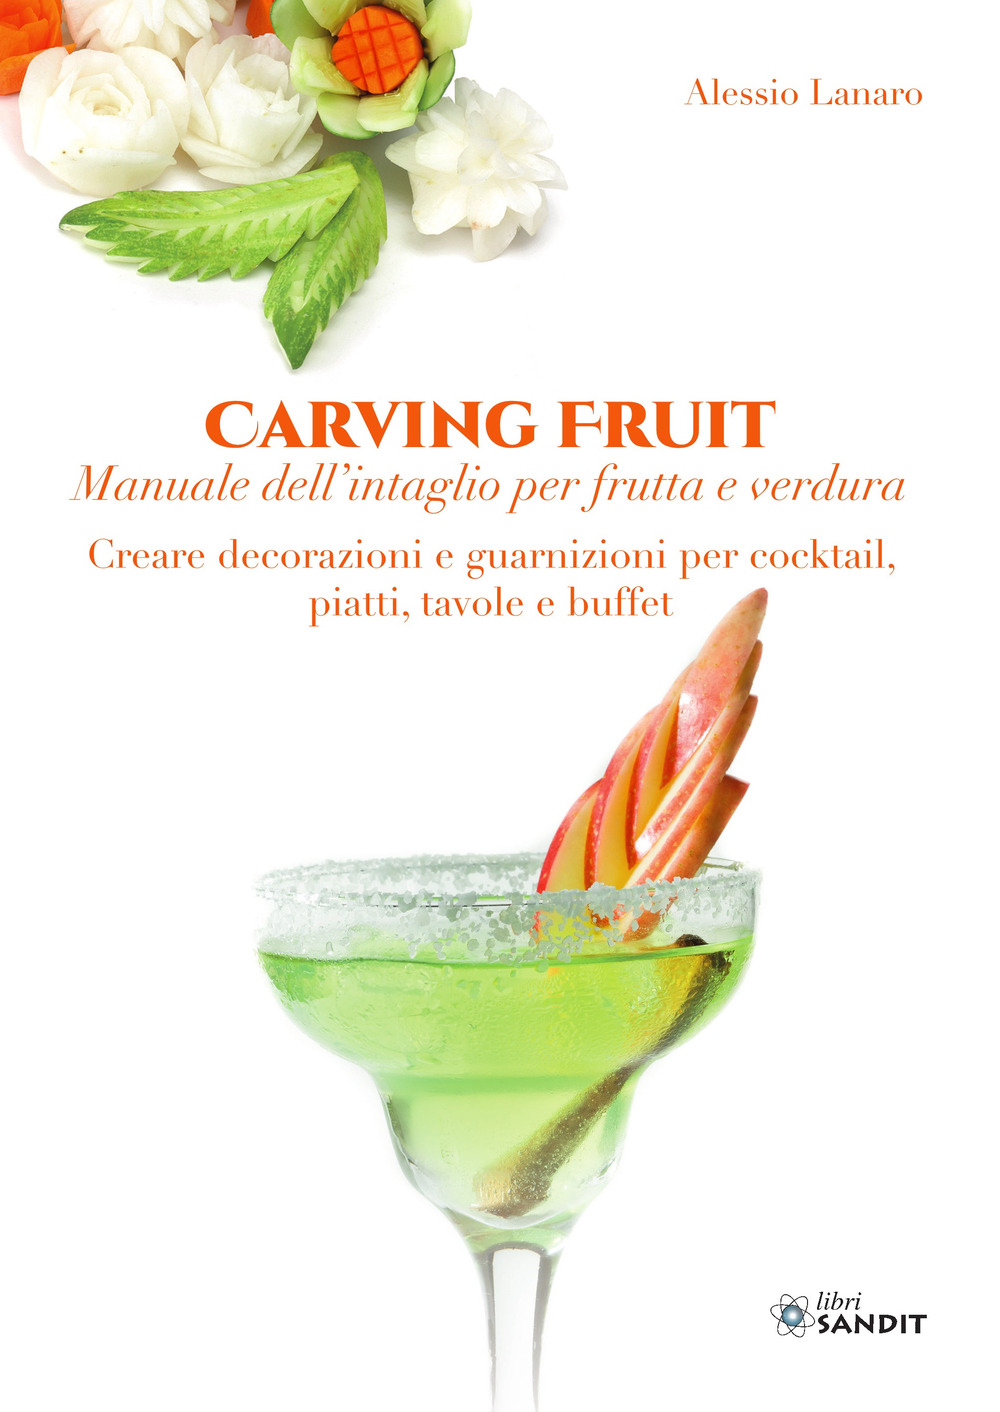 Carving Fruit. Manuale dell'intaglio per frutta e verdura. Creare decorazioni e guarnizioni per cocktail, piatti, tavole e buffet